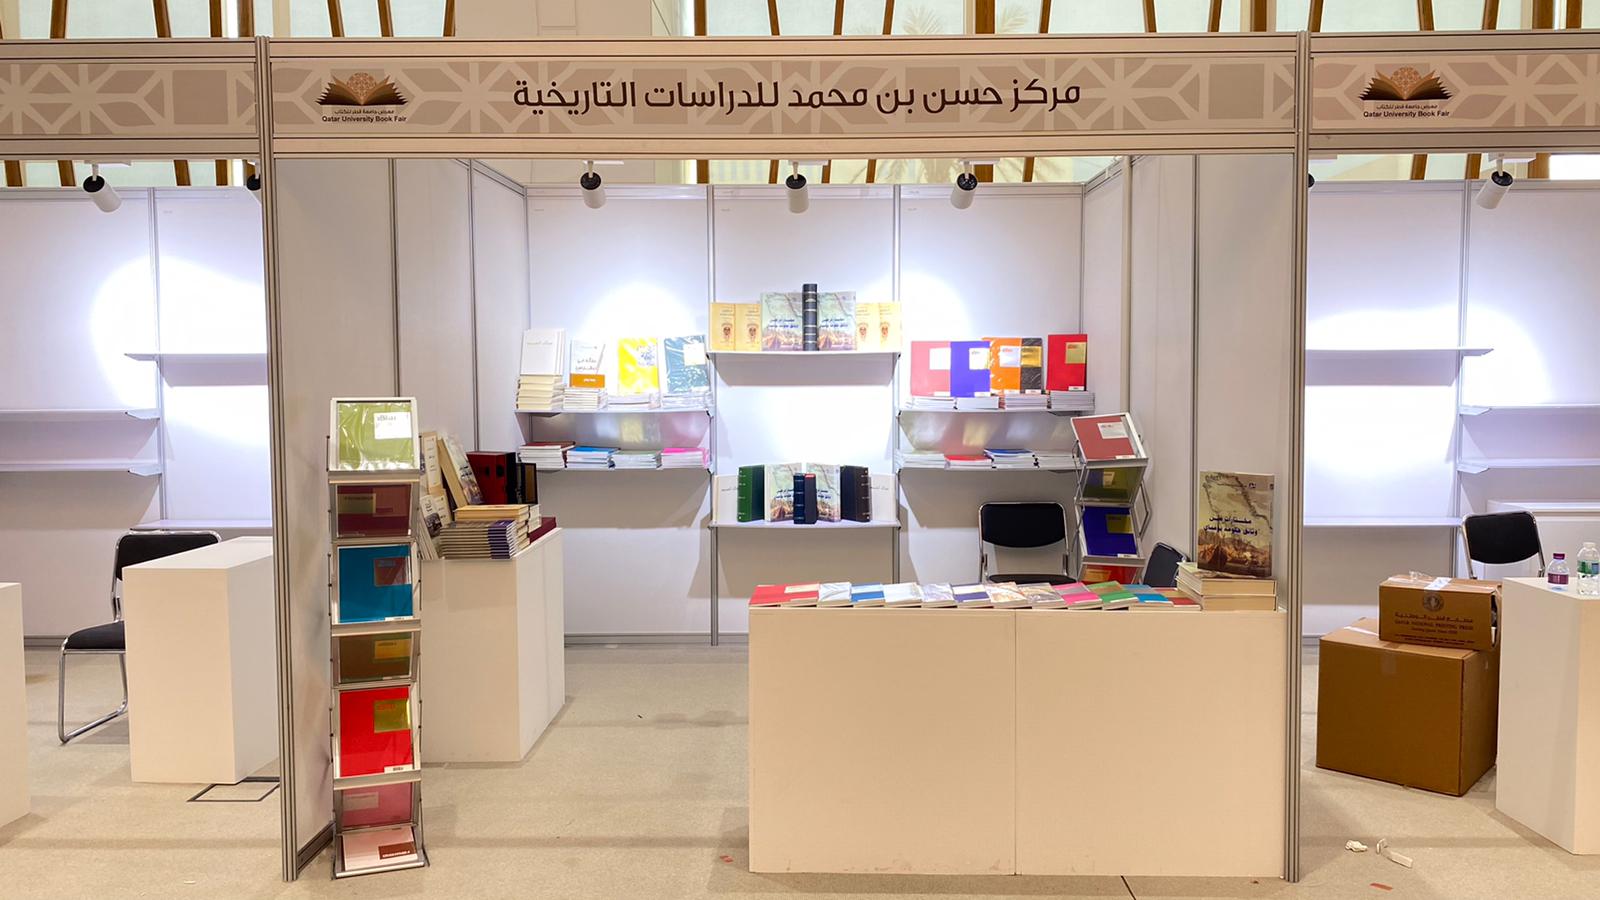 المركز يشارك في معرض جامعة قطر للكتاب